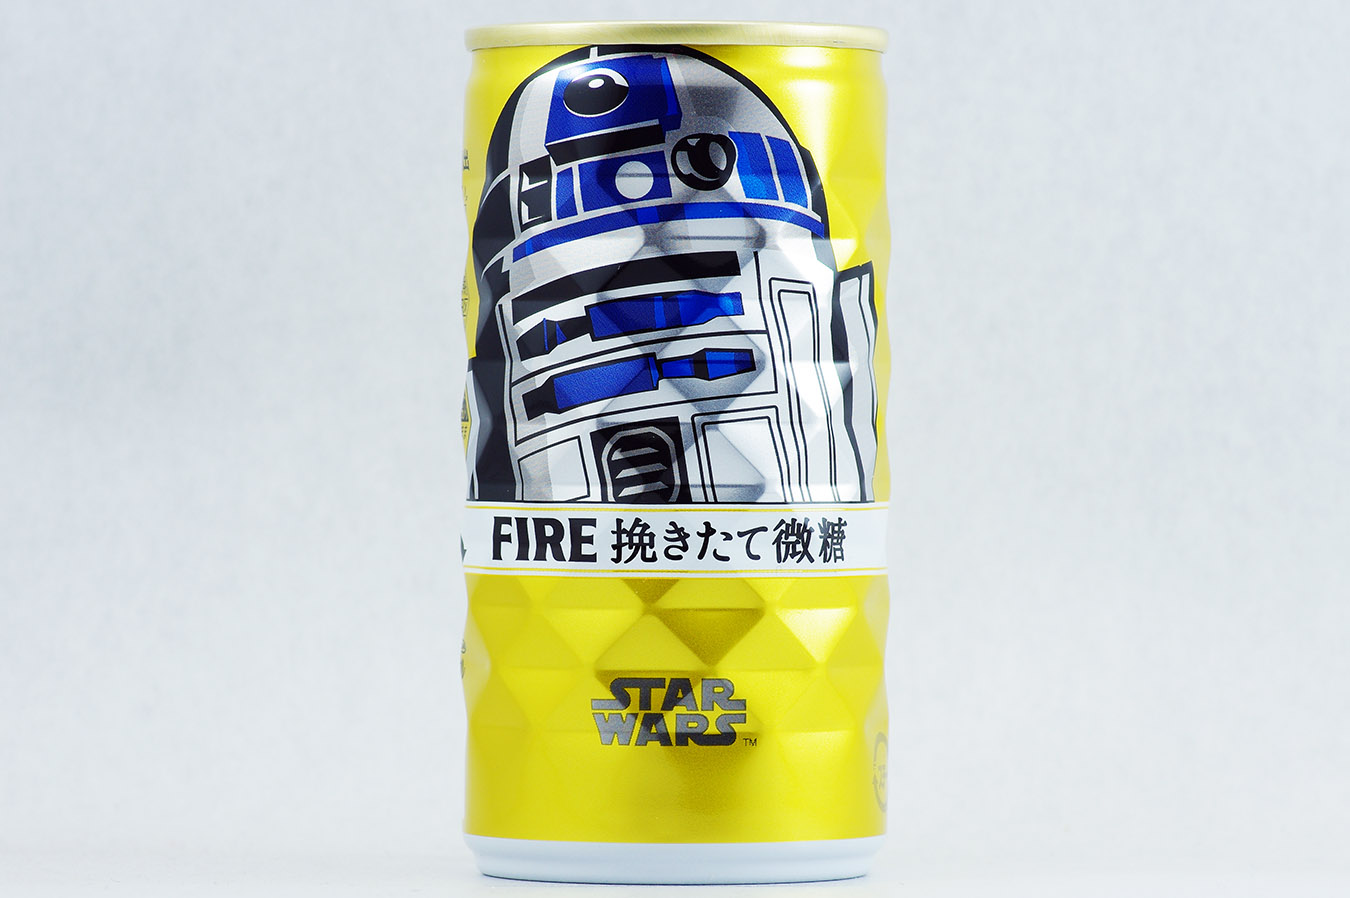 FIRE 挽きたて微糖 「STAR WARS」限定デザイン R2-D2 2015年12月